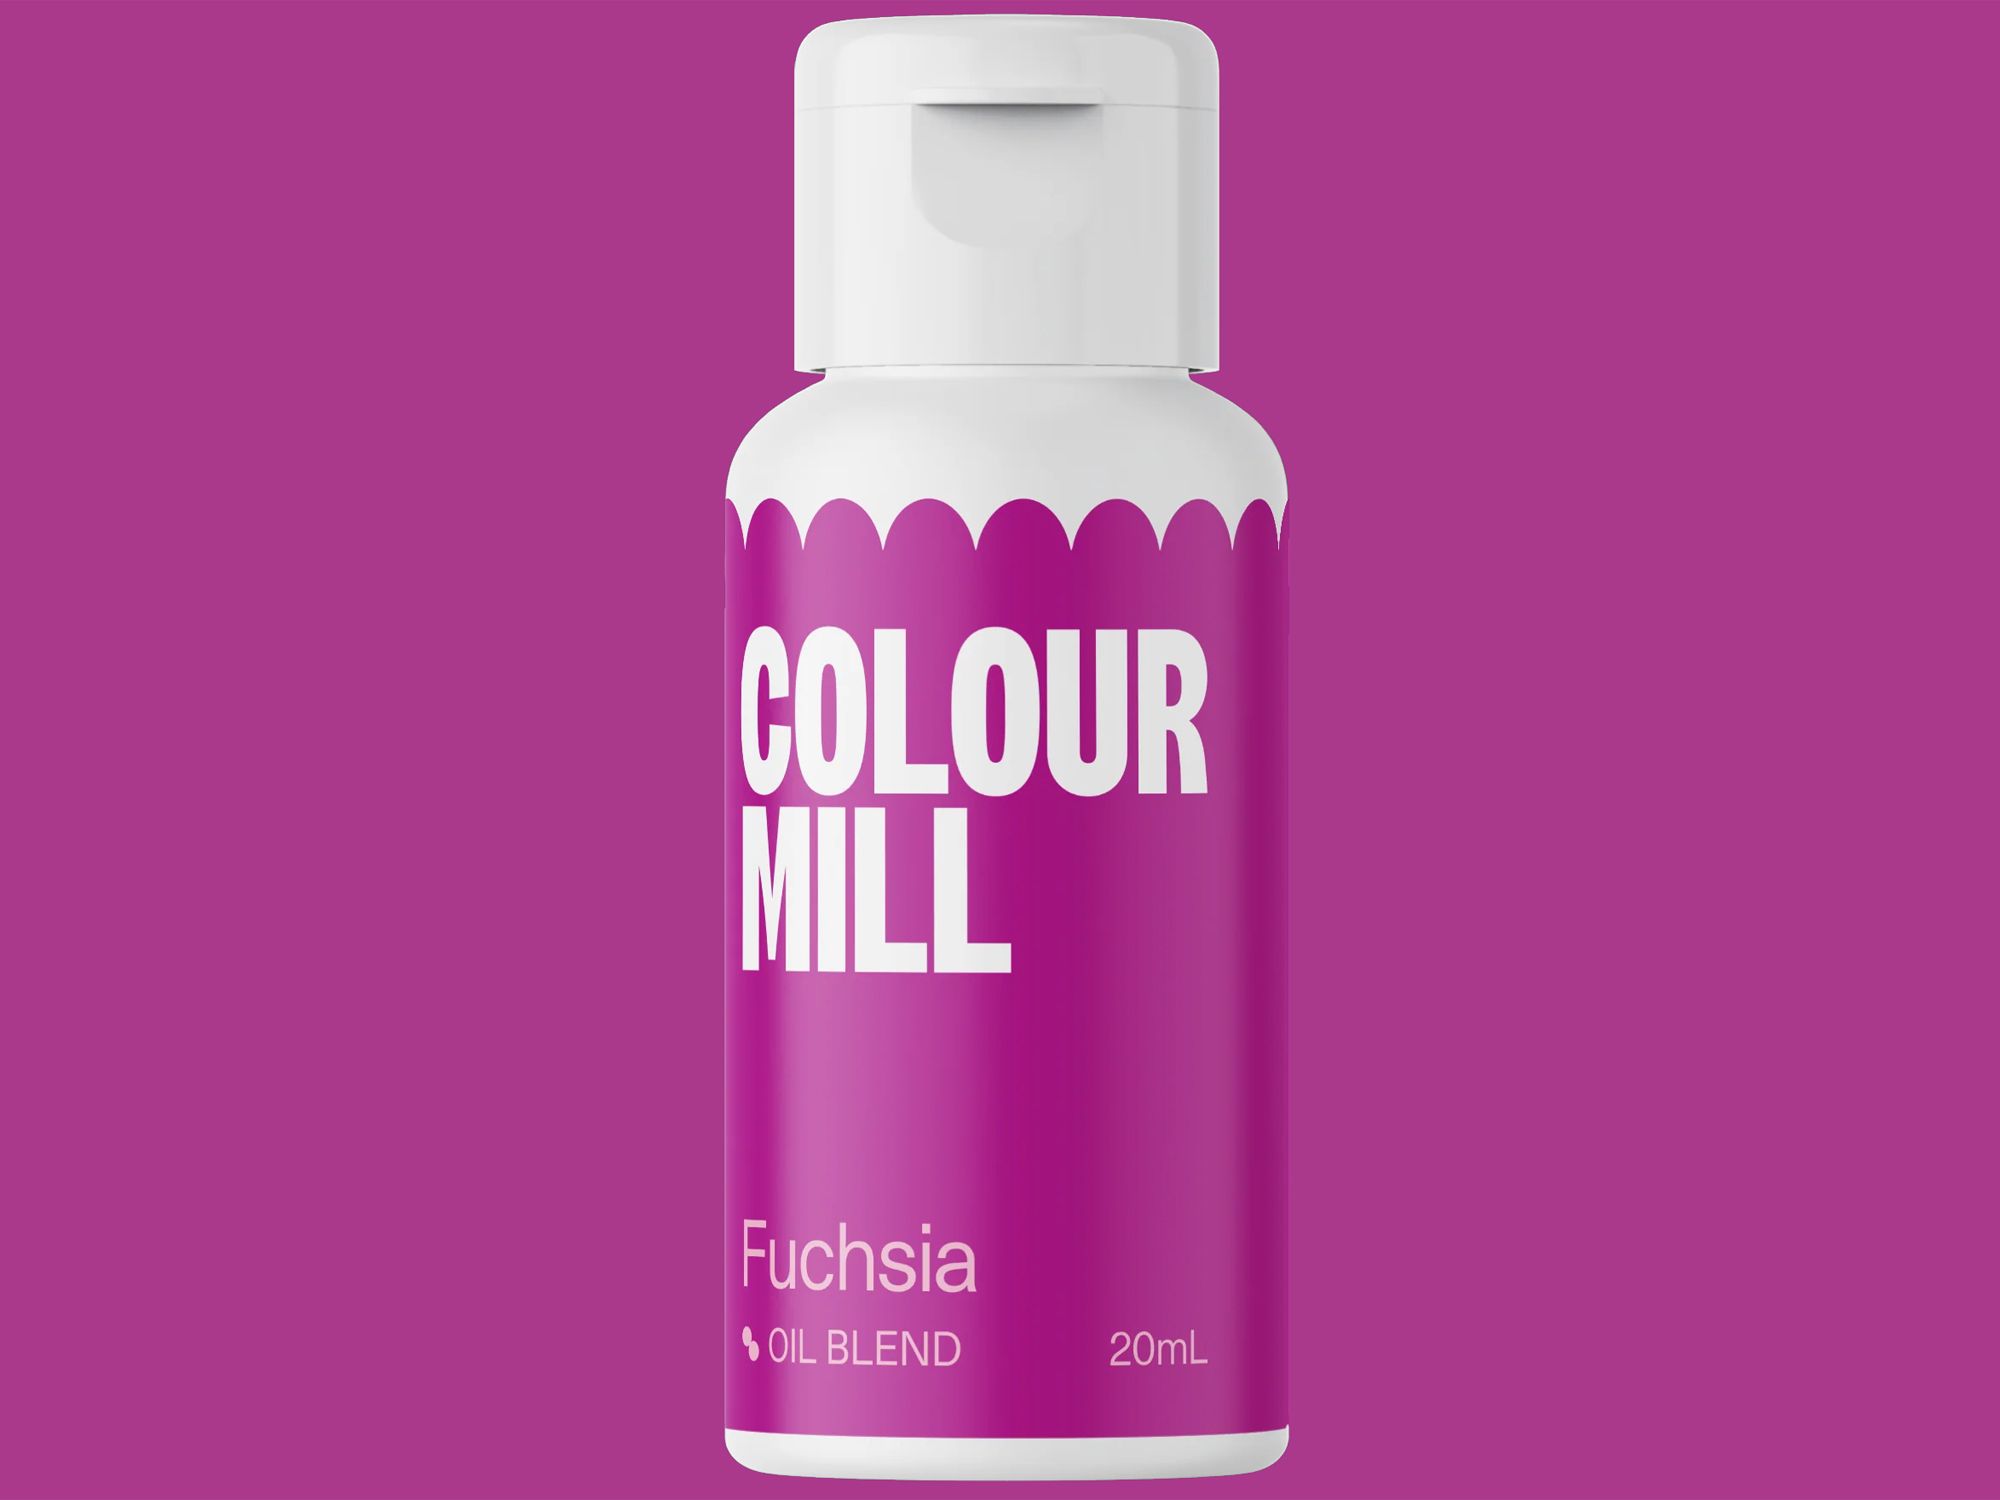 Colour Mill Fuchsia (Oil Blend) 20ml